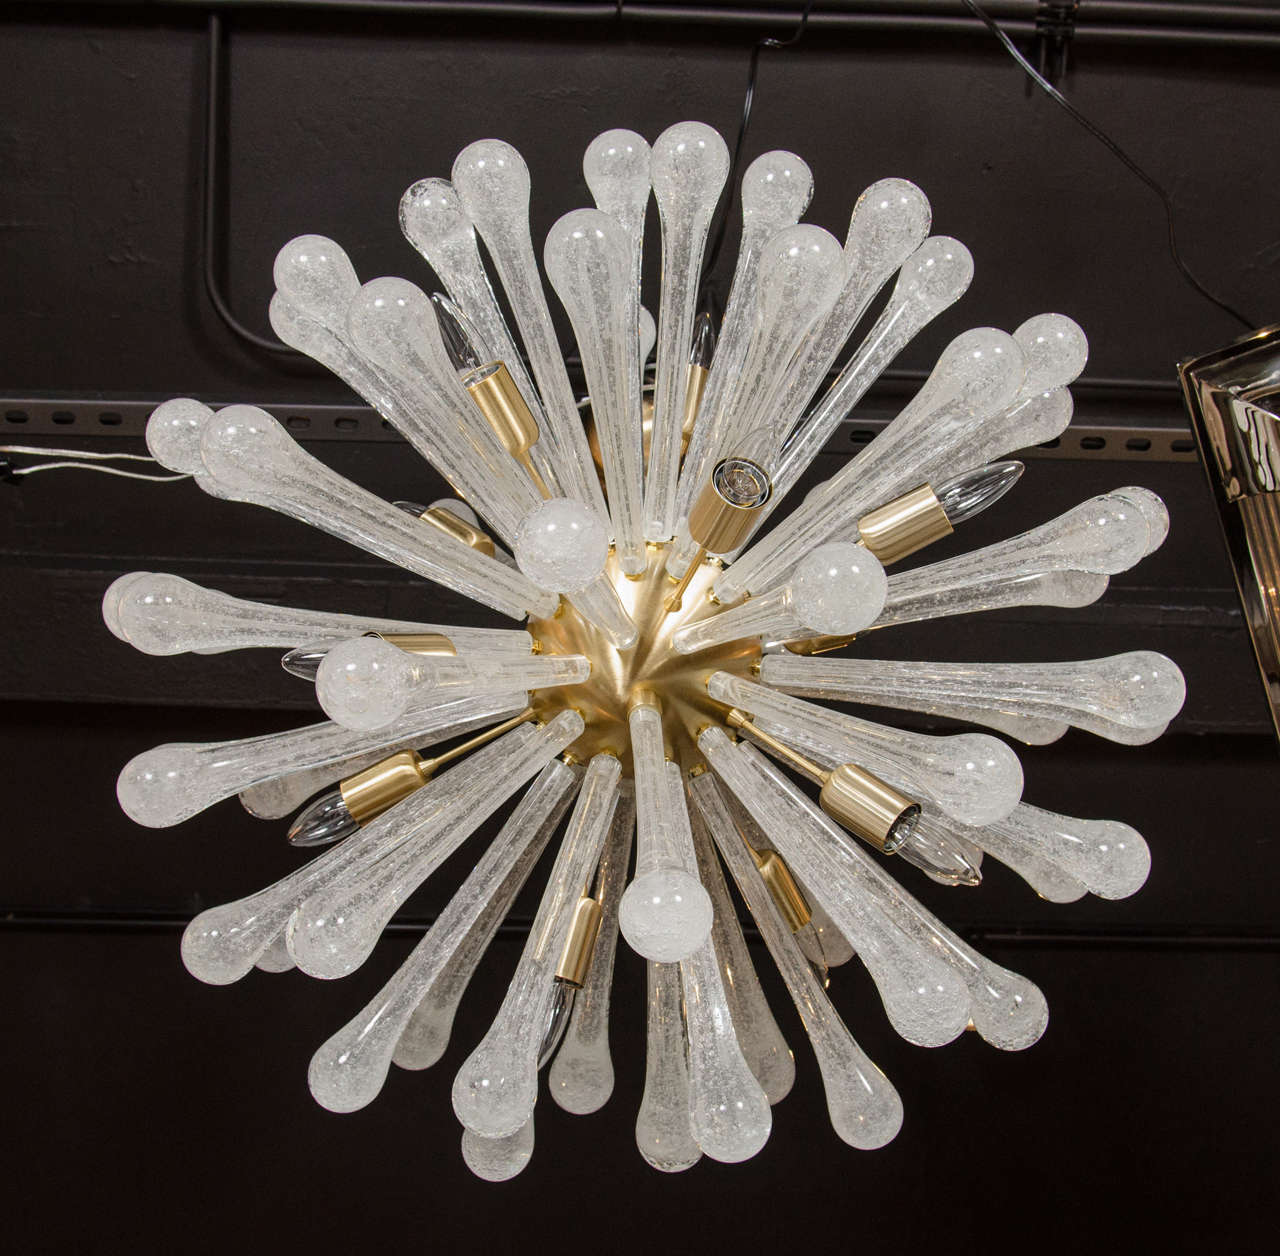 Ce spectaculaire lustre spoutnik en verre a été soufflé à la main à Murano, en Italie, l'île au large de Venise réputée depuis des siècles pour sa production de verre de qualité supérieure. Il présente une abondance de tiges de verre